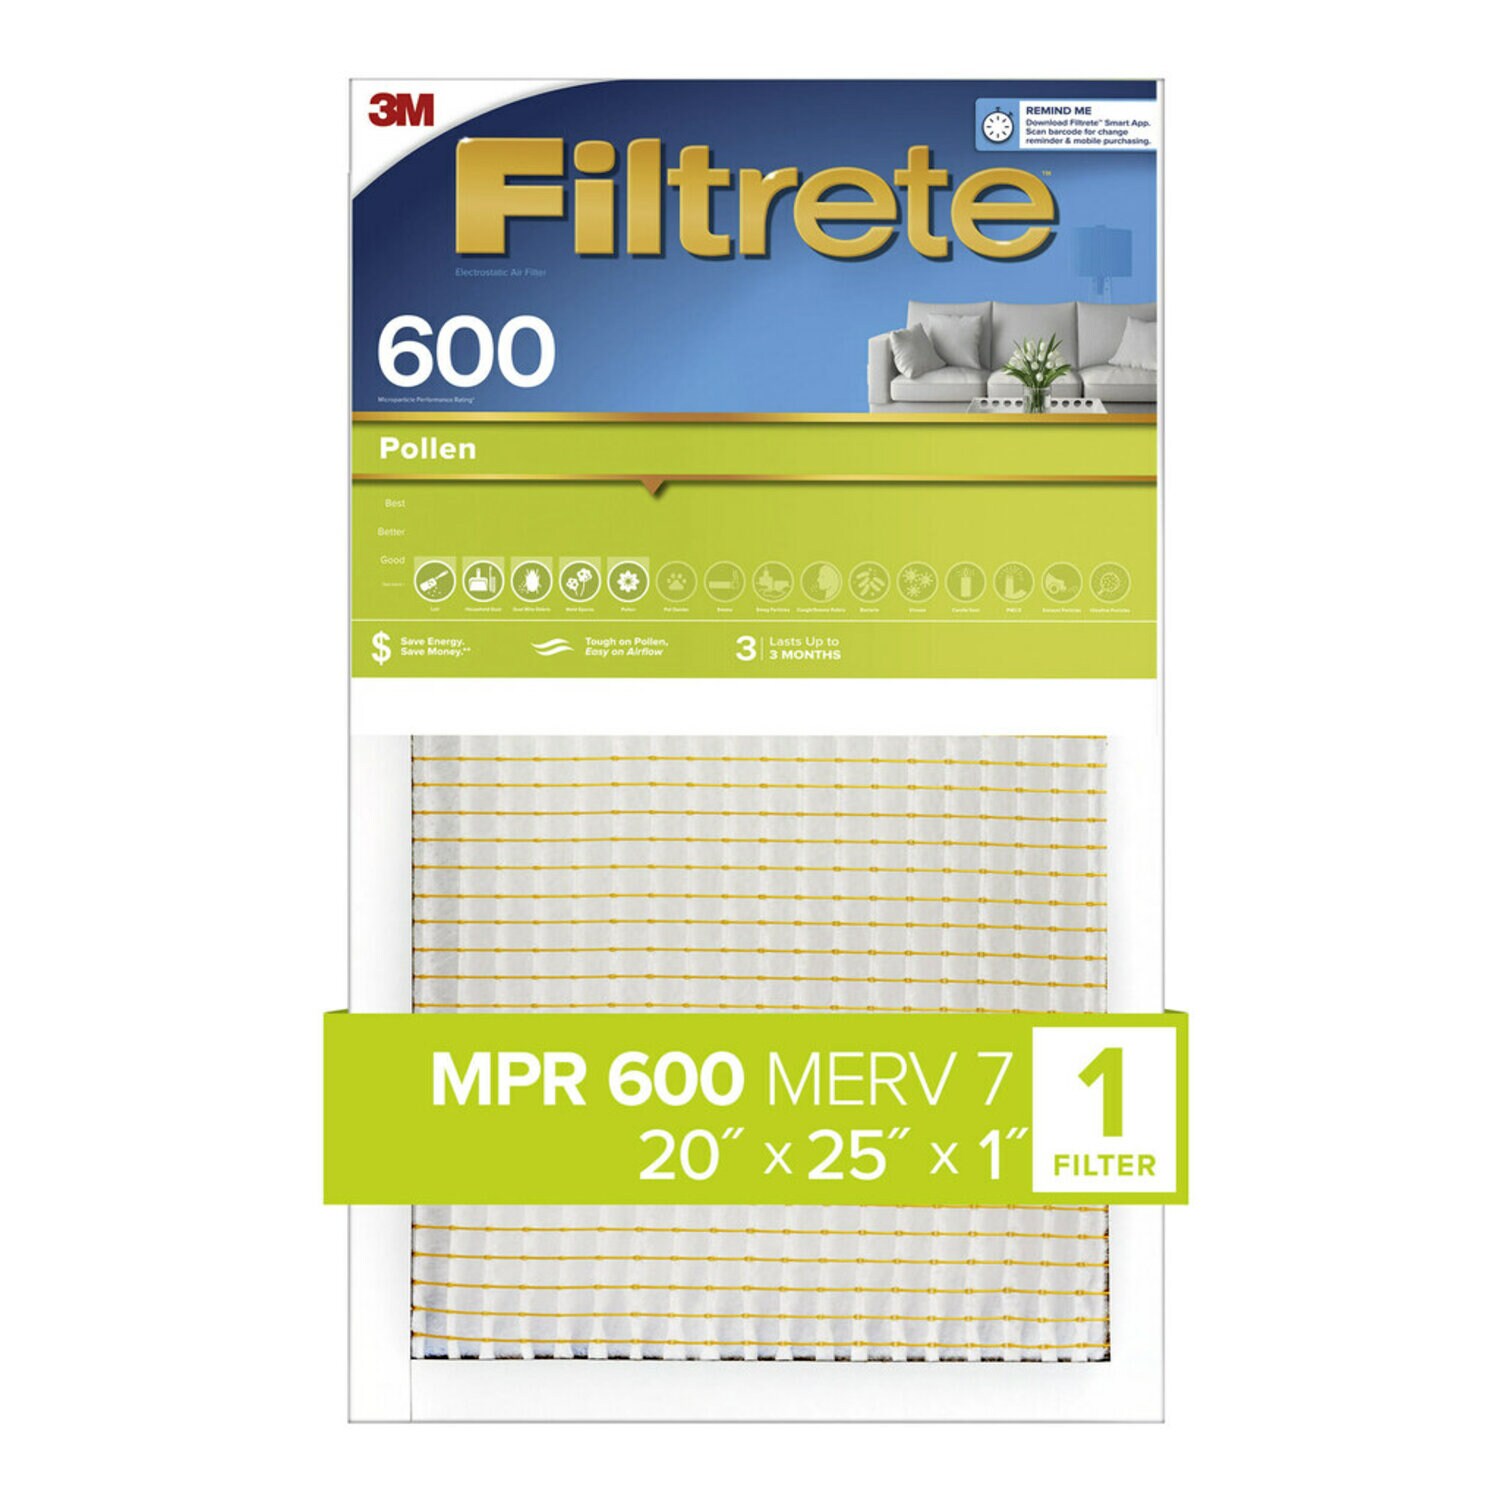 7100186818 - Filtrete Pollen Air Filter, 600 MPR, 9833-4, 20 in x 25 in x 1 in (50.8
cm x 63.5 cm x 2.54 cm)